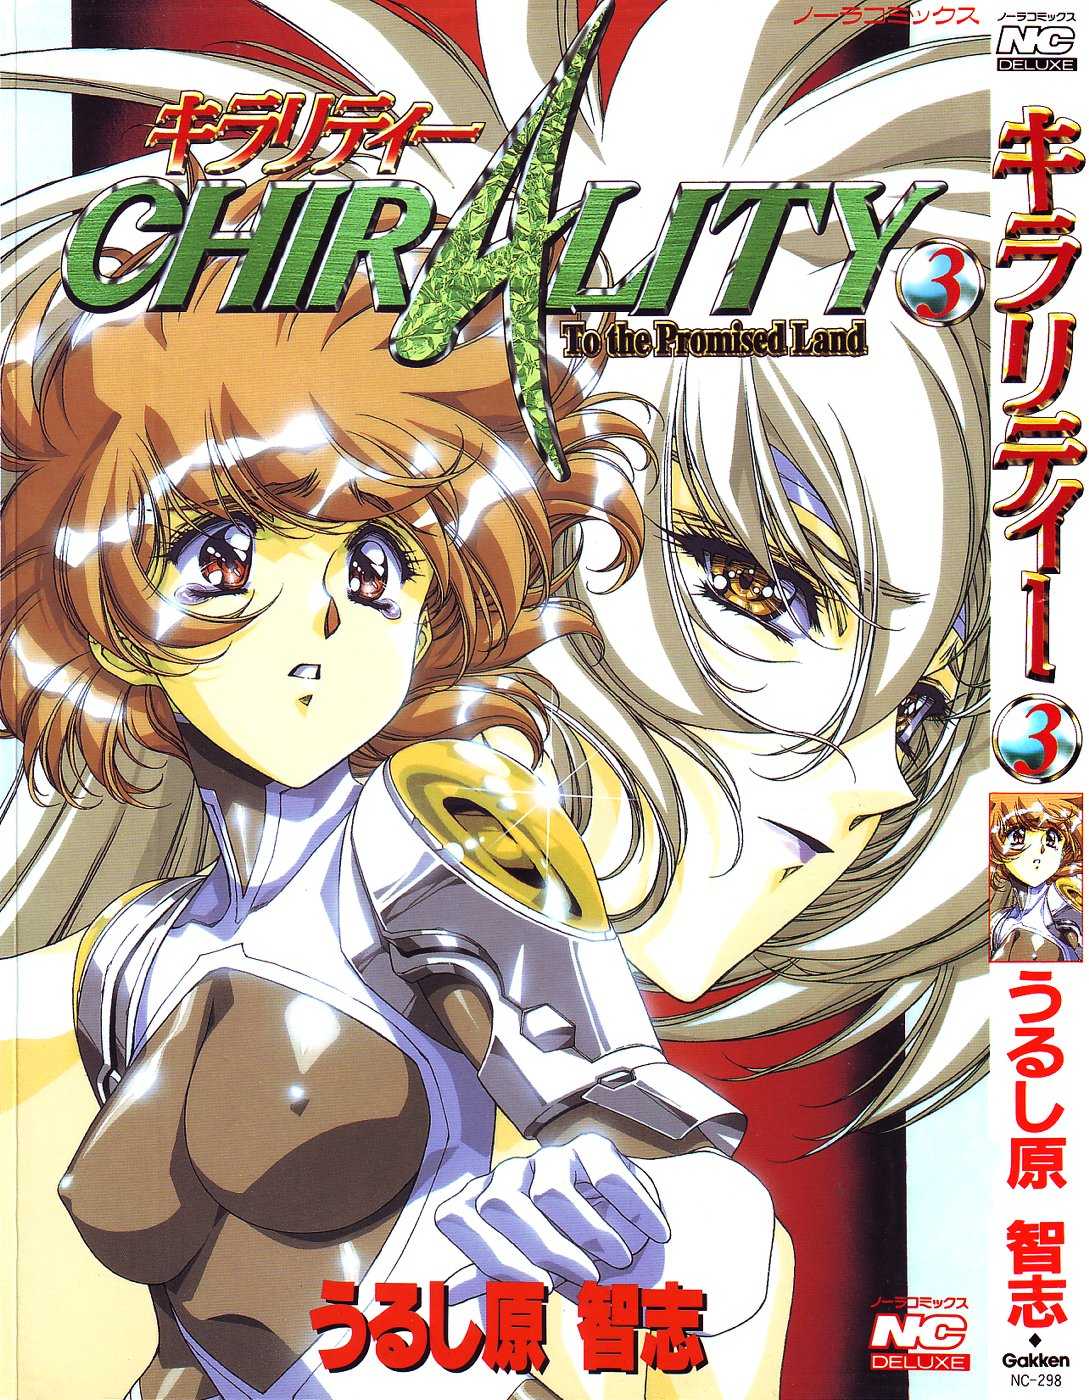 [Urushihara Satoshi] Chirality To The Promised Land Vol. 3 [うるし原智志] キラリティ3